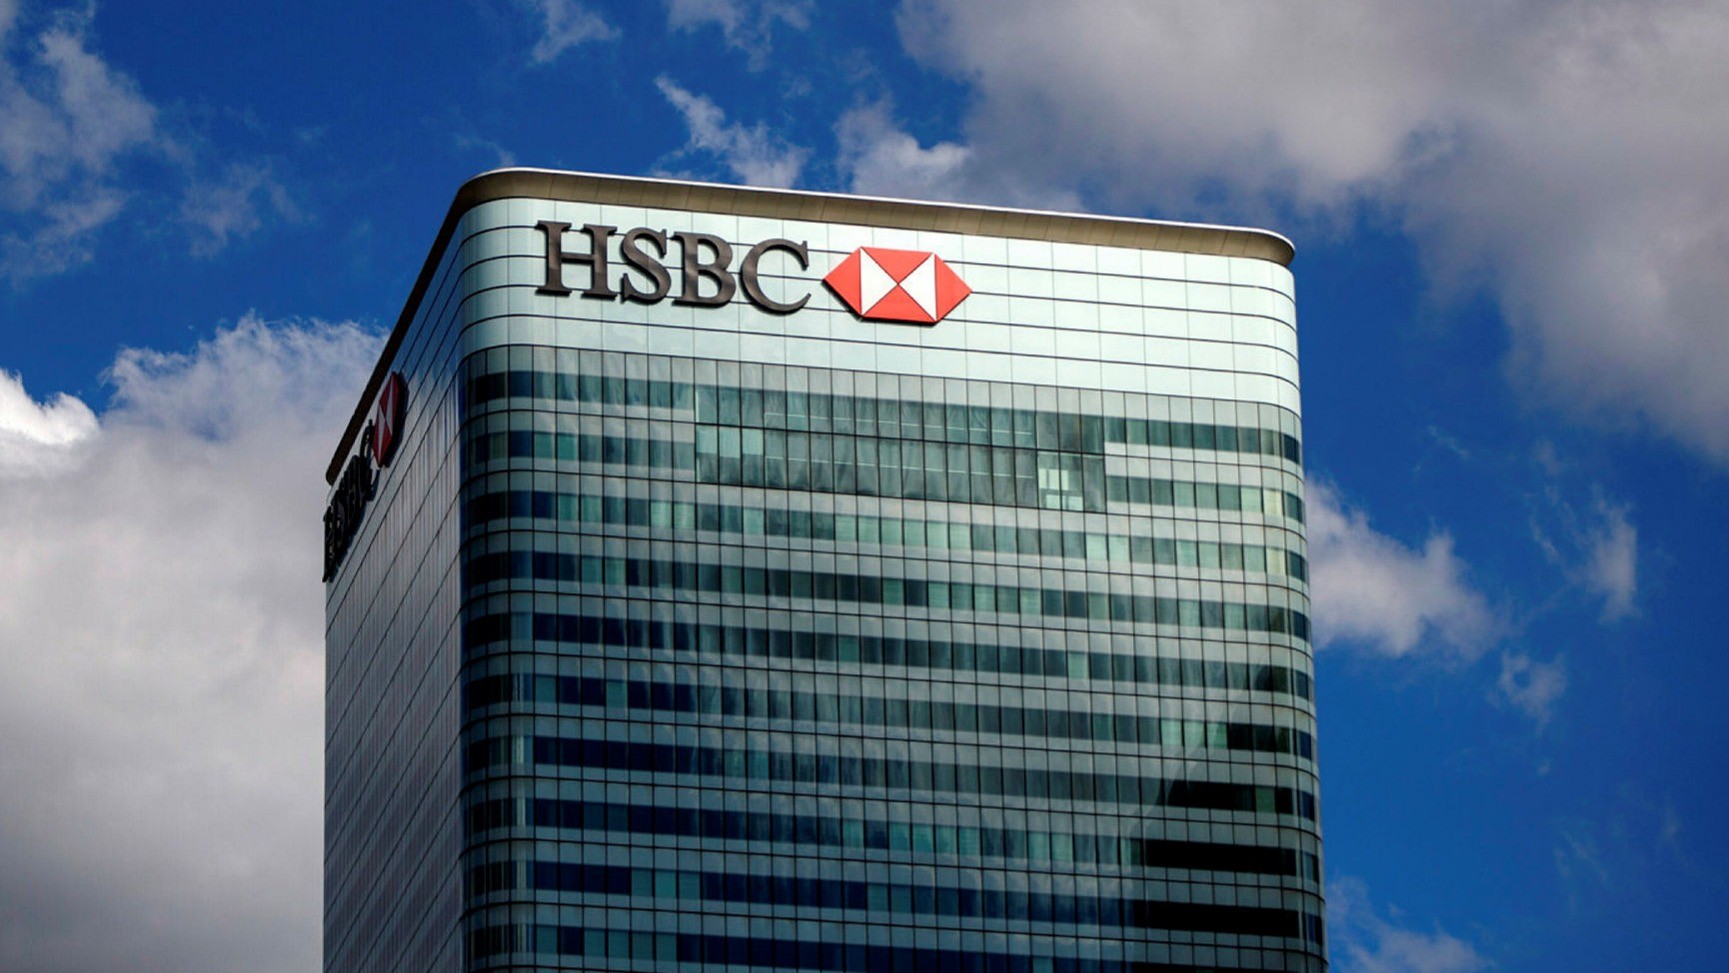 SWOT Analysis of HSBC - Image of HSBC Bank